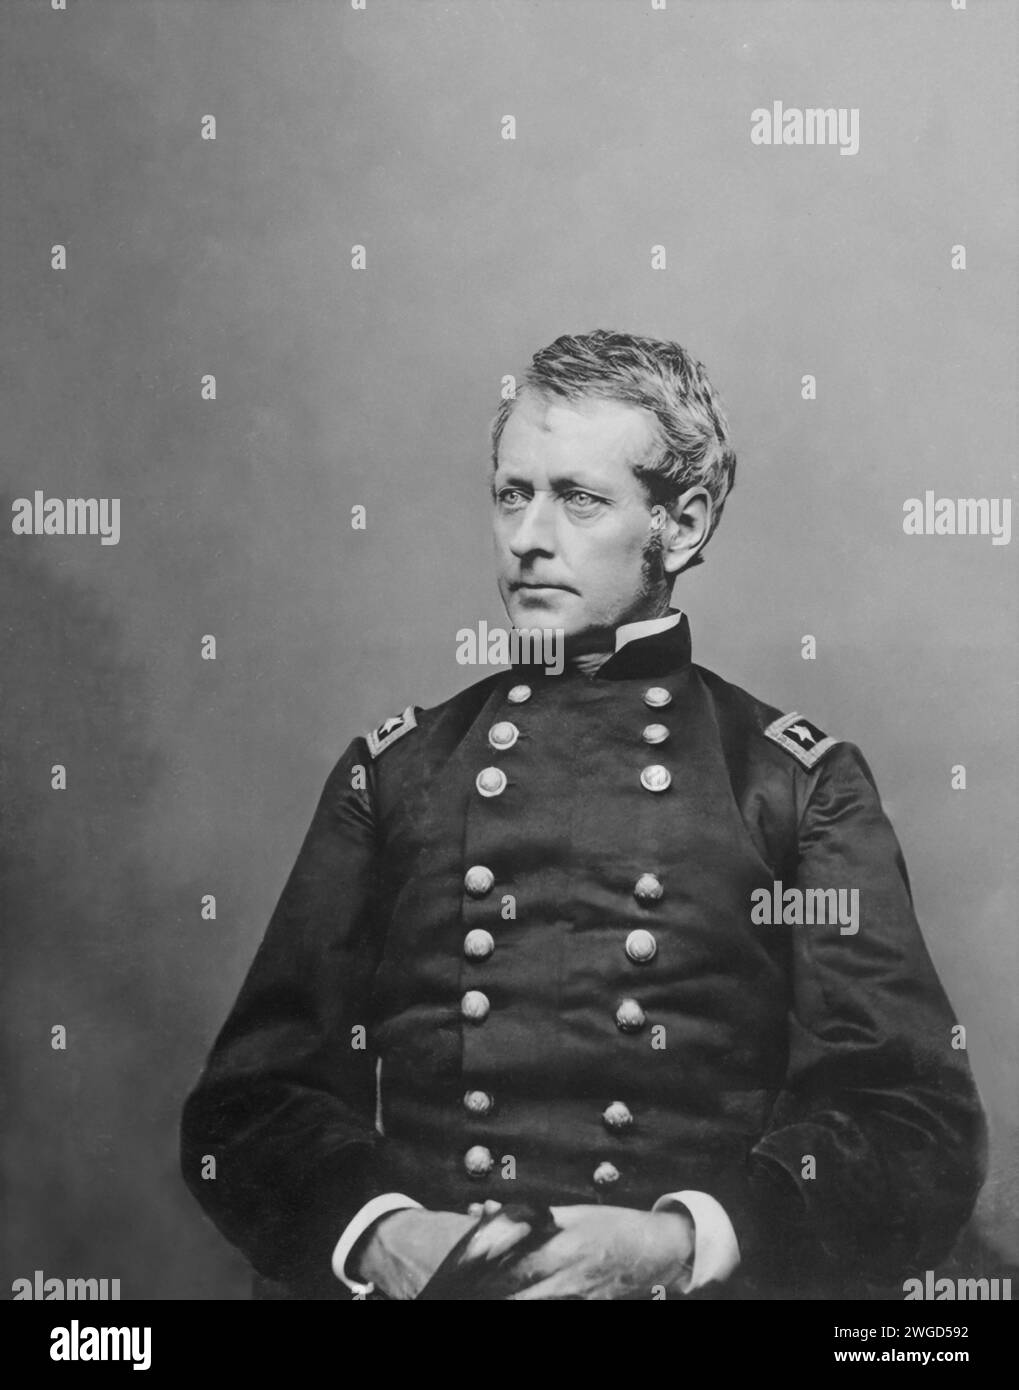 Ein Porträt von General Joseph Hooker. Ca. 1860–62. Mathew Brady Kollektion. Registriert in der Library of Congress im Jahr 1862. Stockfoto